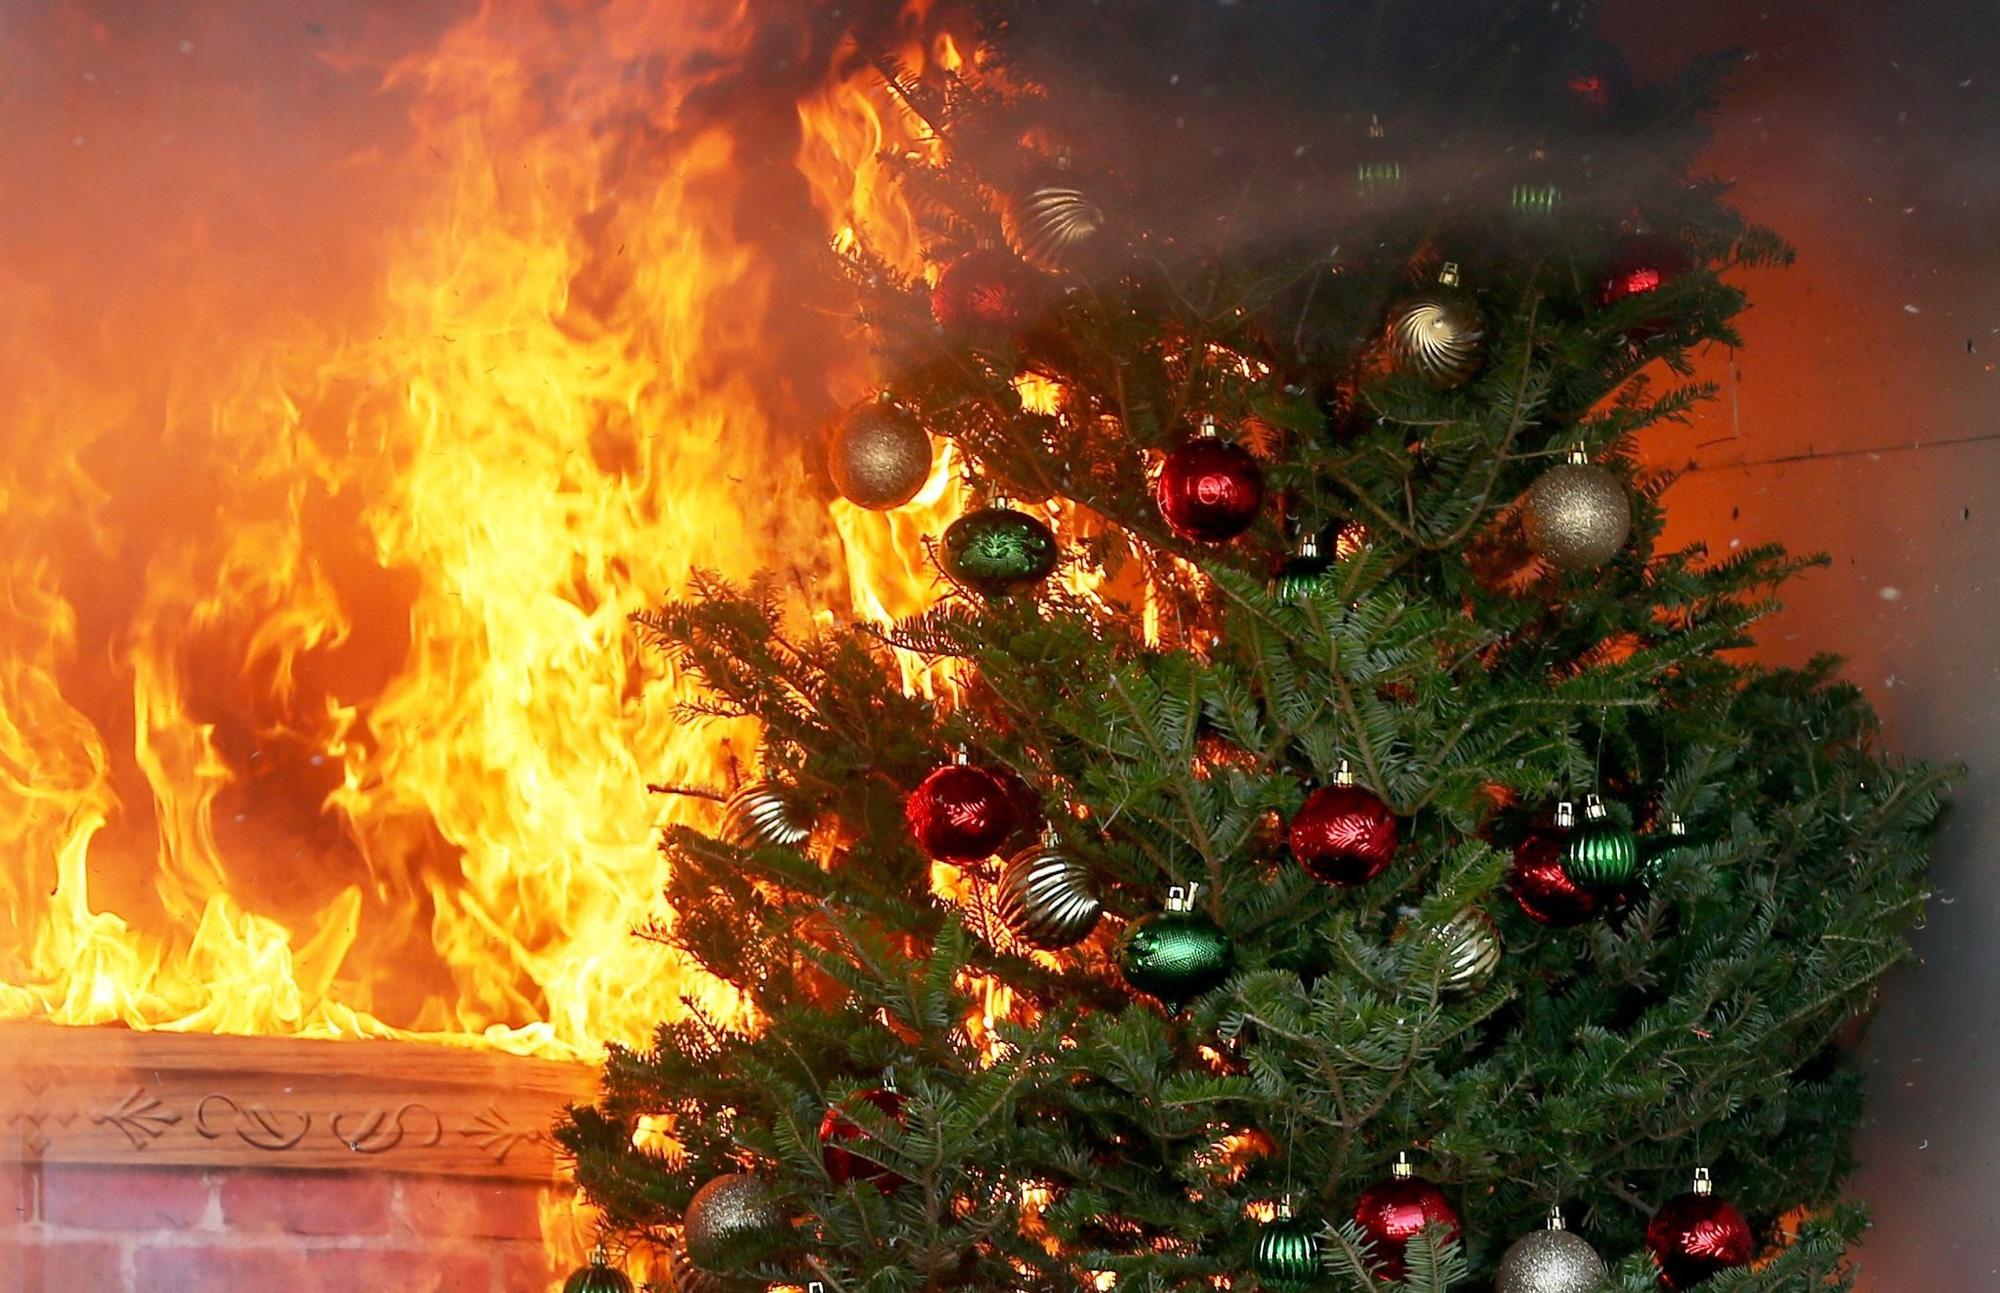 Kinh hoàng cảnh cây thông Noel bốc cháy ngùn ngụt trong nhà